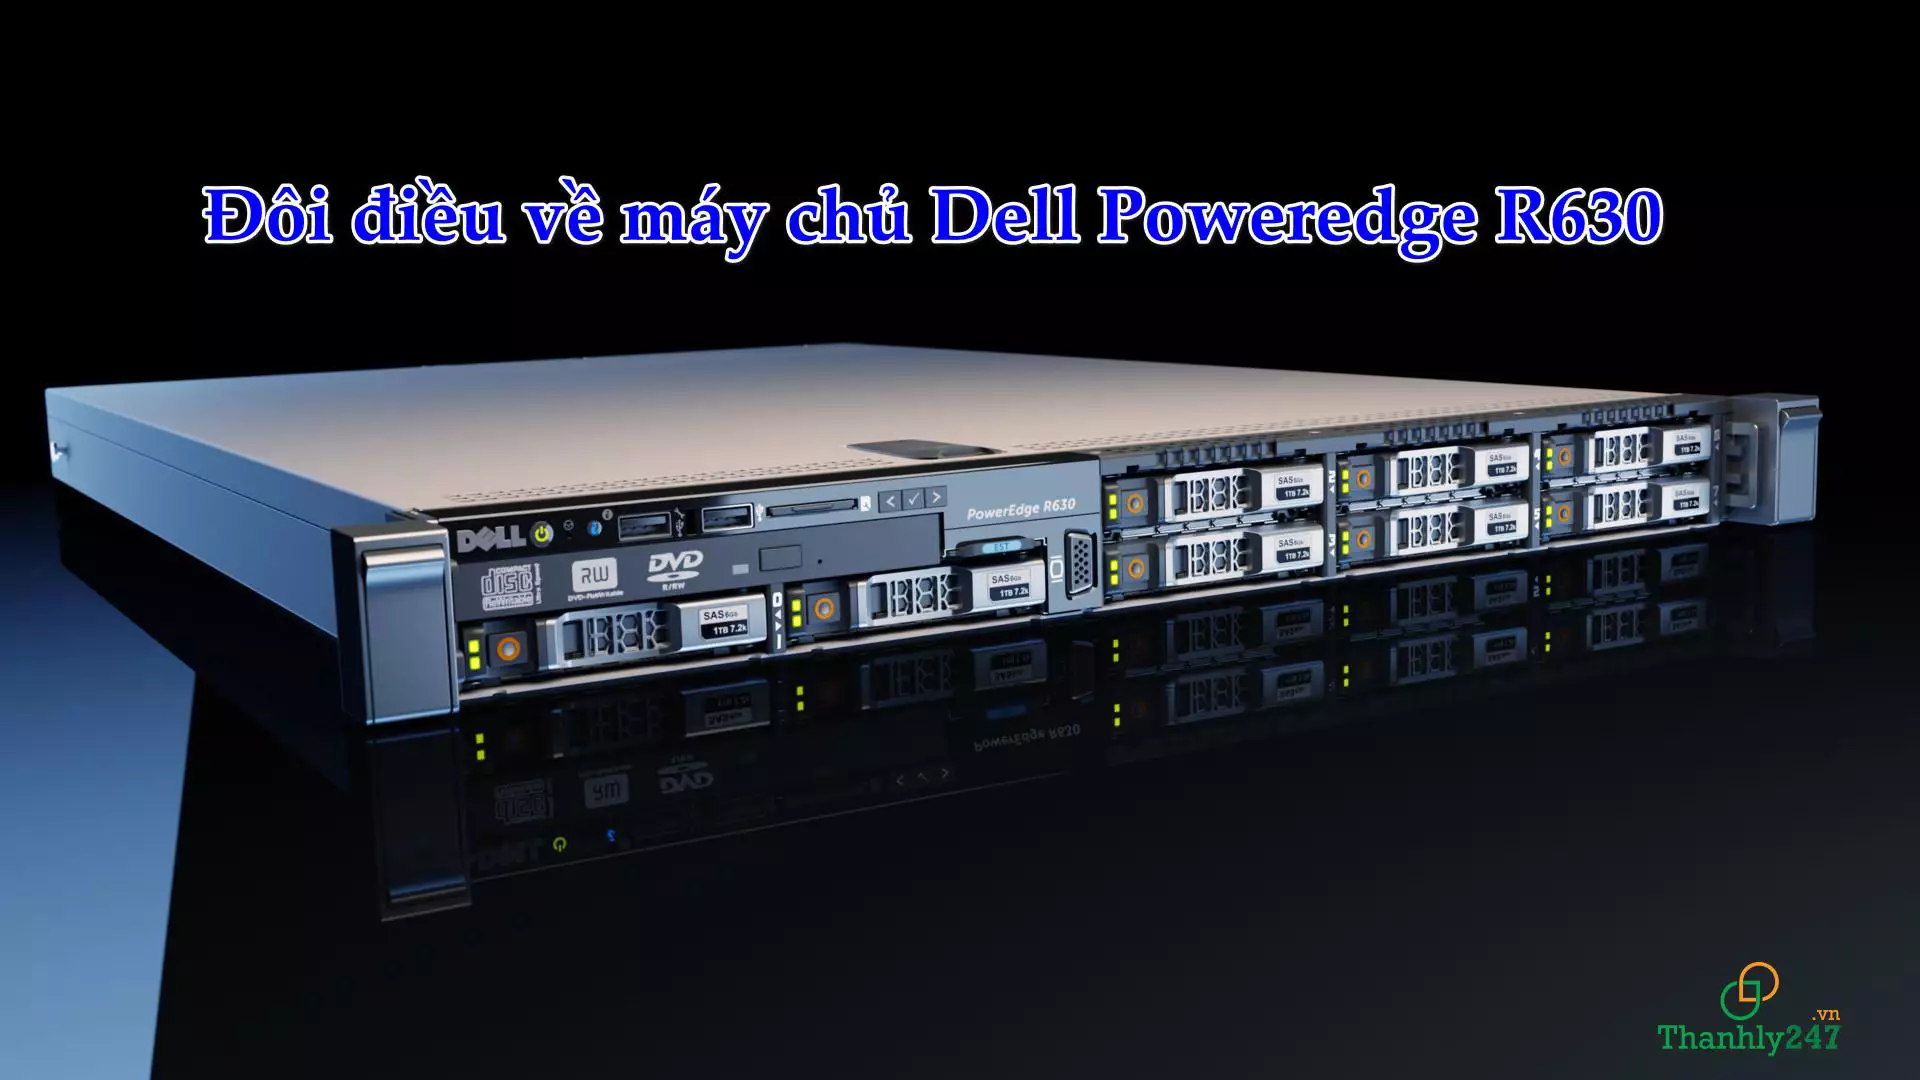 Đôi điều về máy chủ Dell Poweredge R630